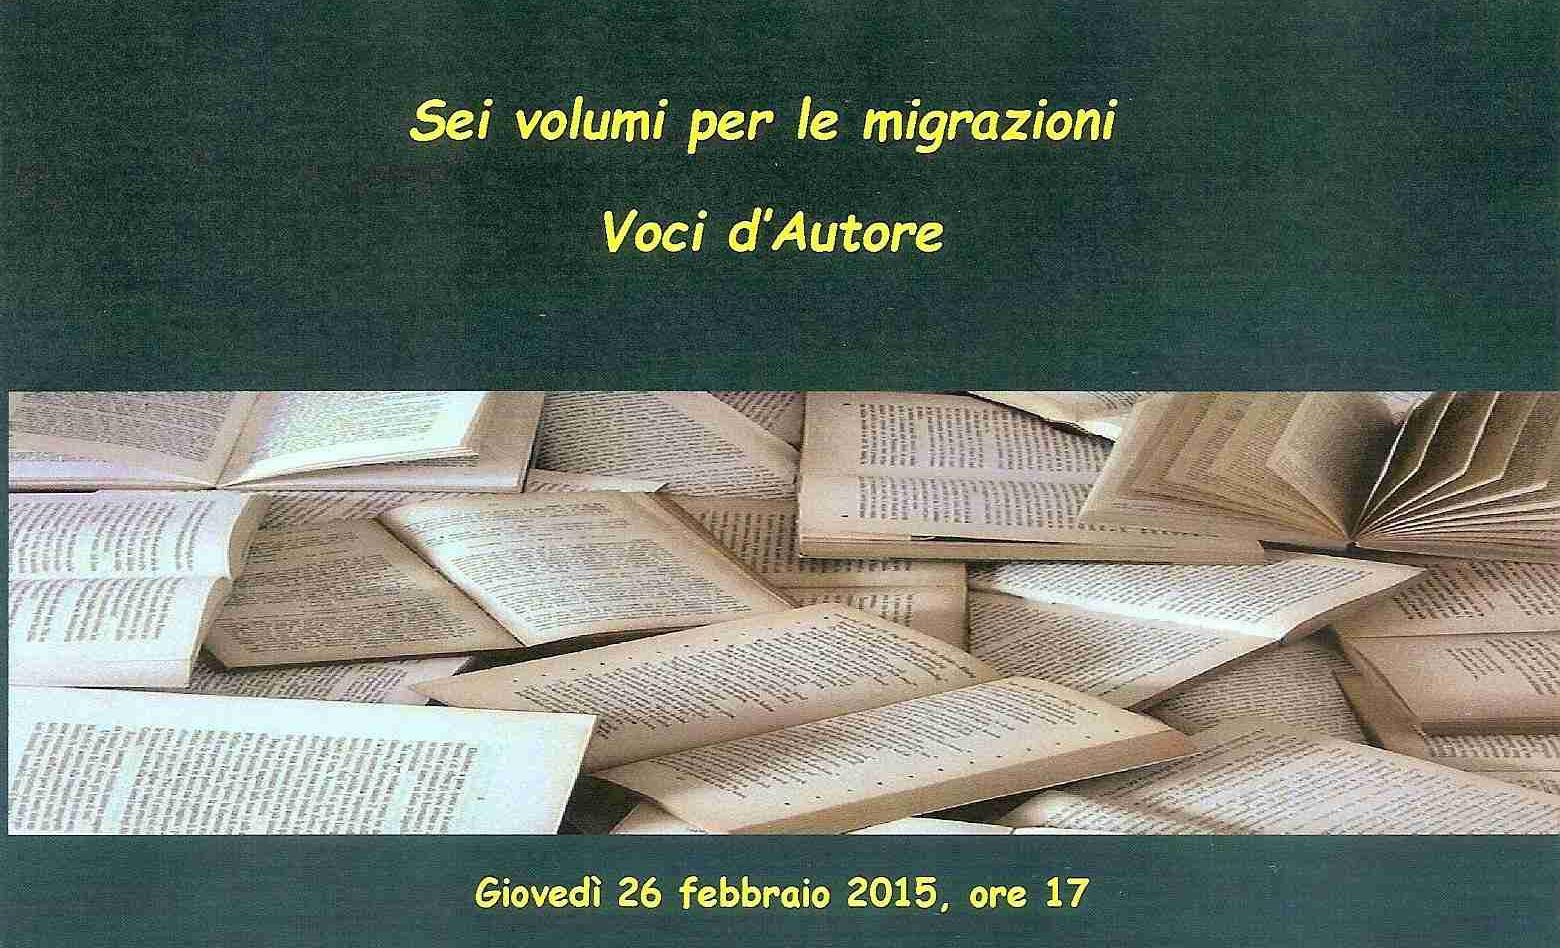 A Roma, il 25 e 26 febbraio, due interessanti eventi sulle migrazioni .  A Casa Argentina Giornata delle Culture migranti, alla Sapienza focus con 6 libri sull’emigrazione